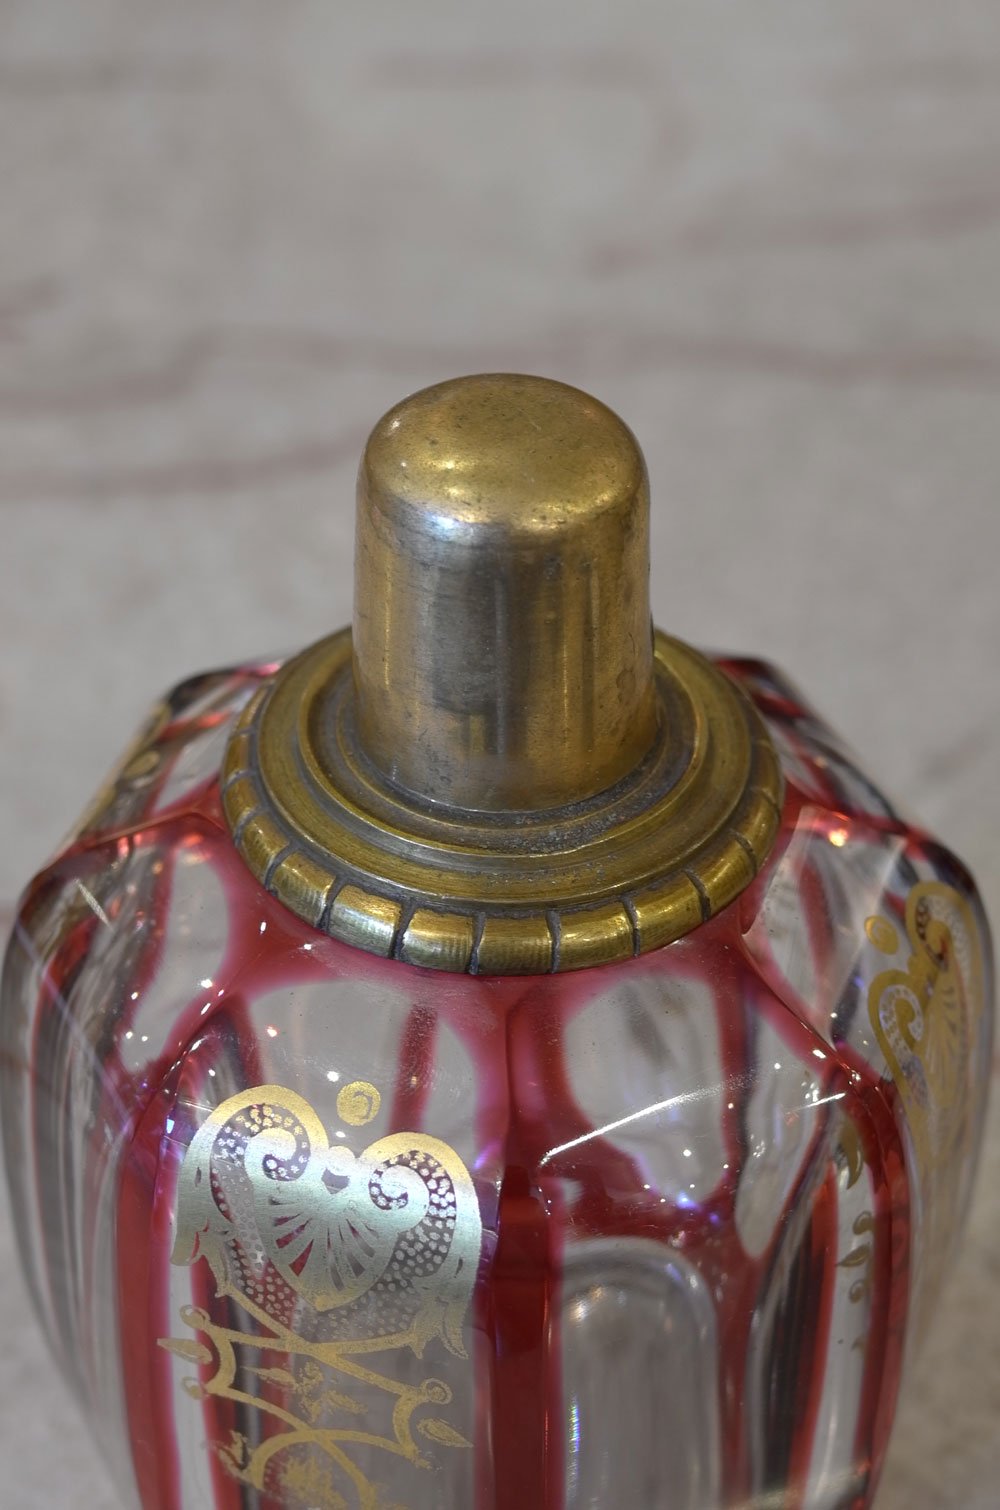 【ランプベルジェアロマ アンティーク】Z Boule Empireエンパイア Baccarat バカラクリスタル最高位モデル 赤色被せ金彩装飾  1930年代 LampeBerger インテリア - ”アーティスティック”な感性の方に